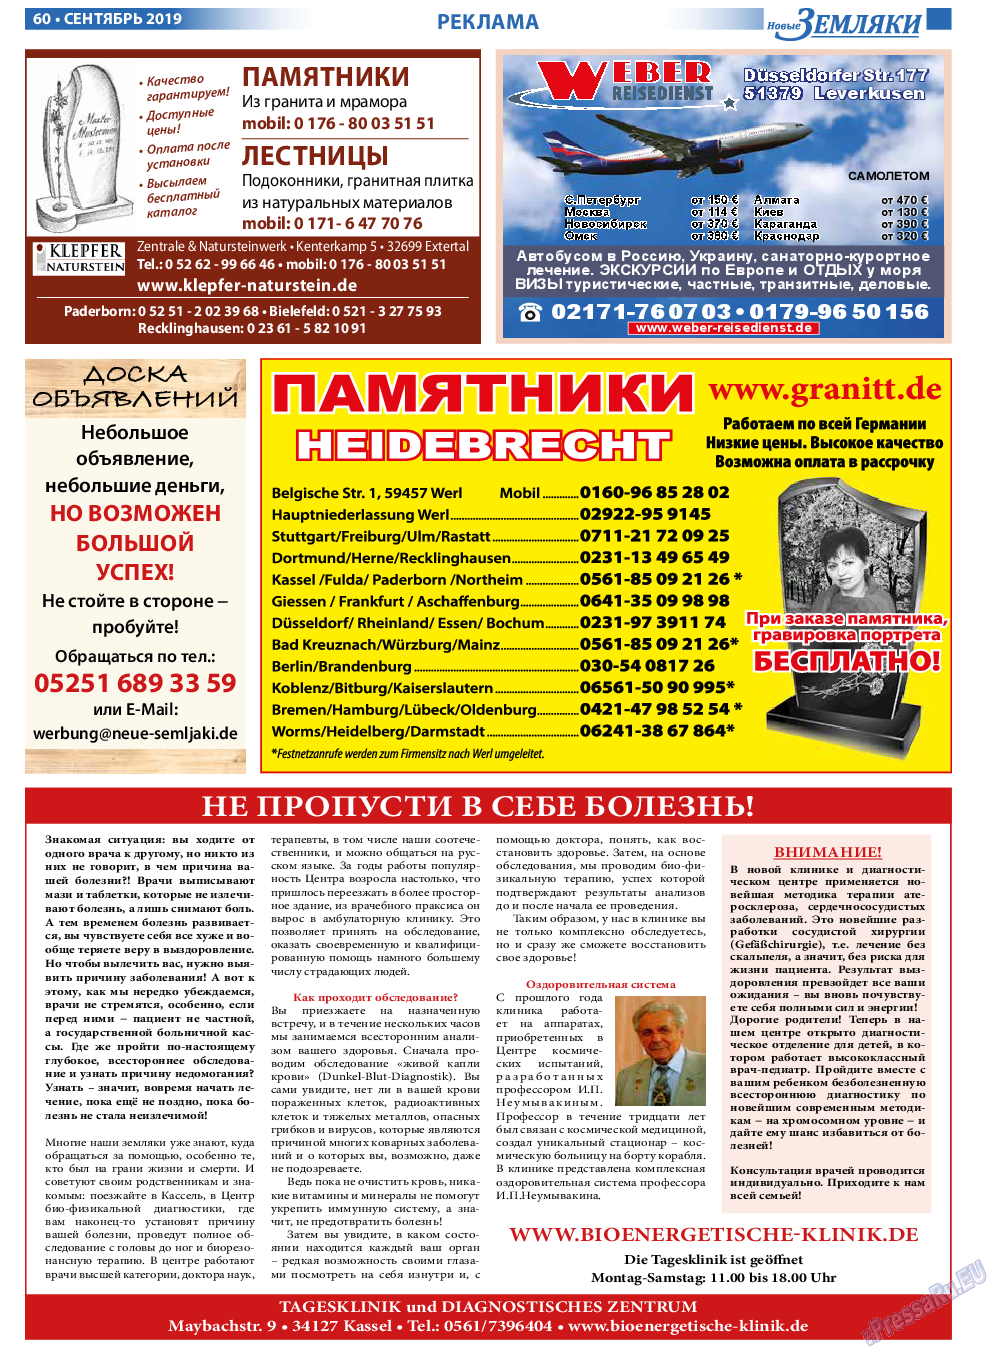 Новые Земляки, газета. 2019 №9 стр.60